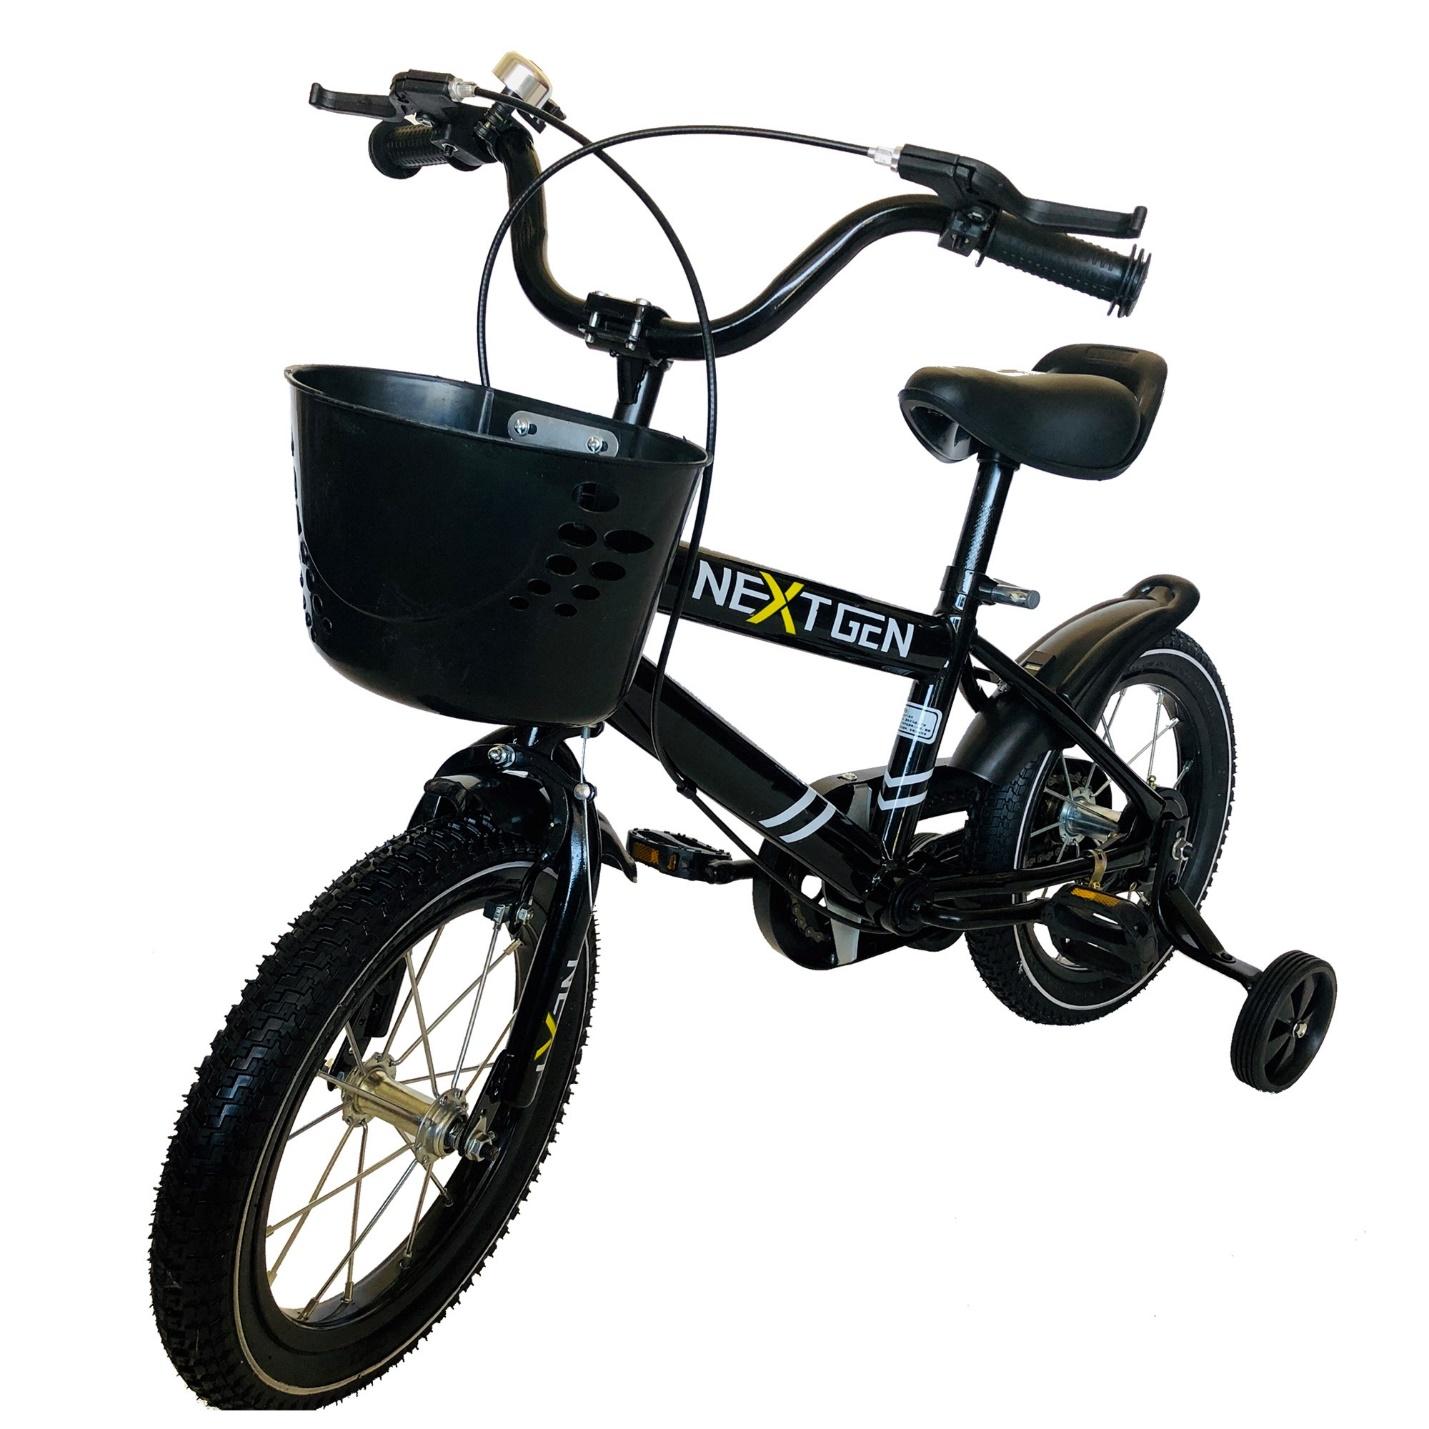 Bicicleta para niños NextGen de 10 pulgadas (negra), retirada del mercado